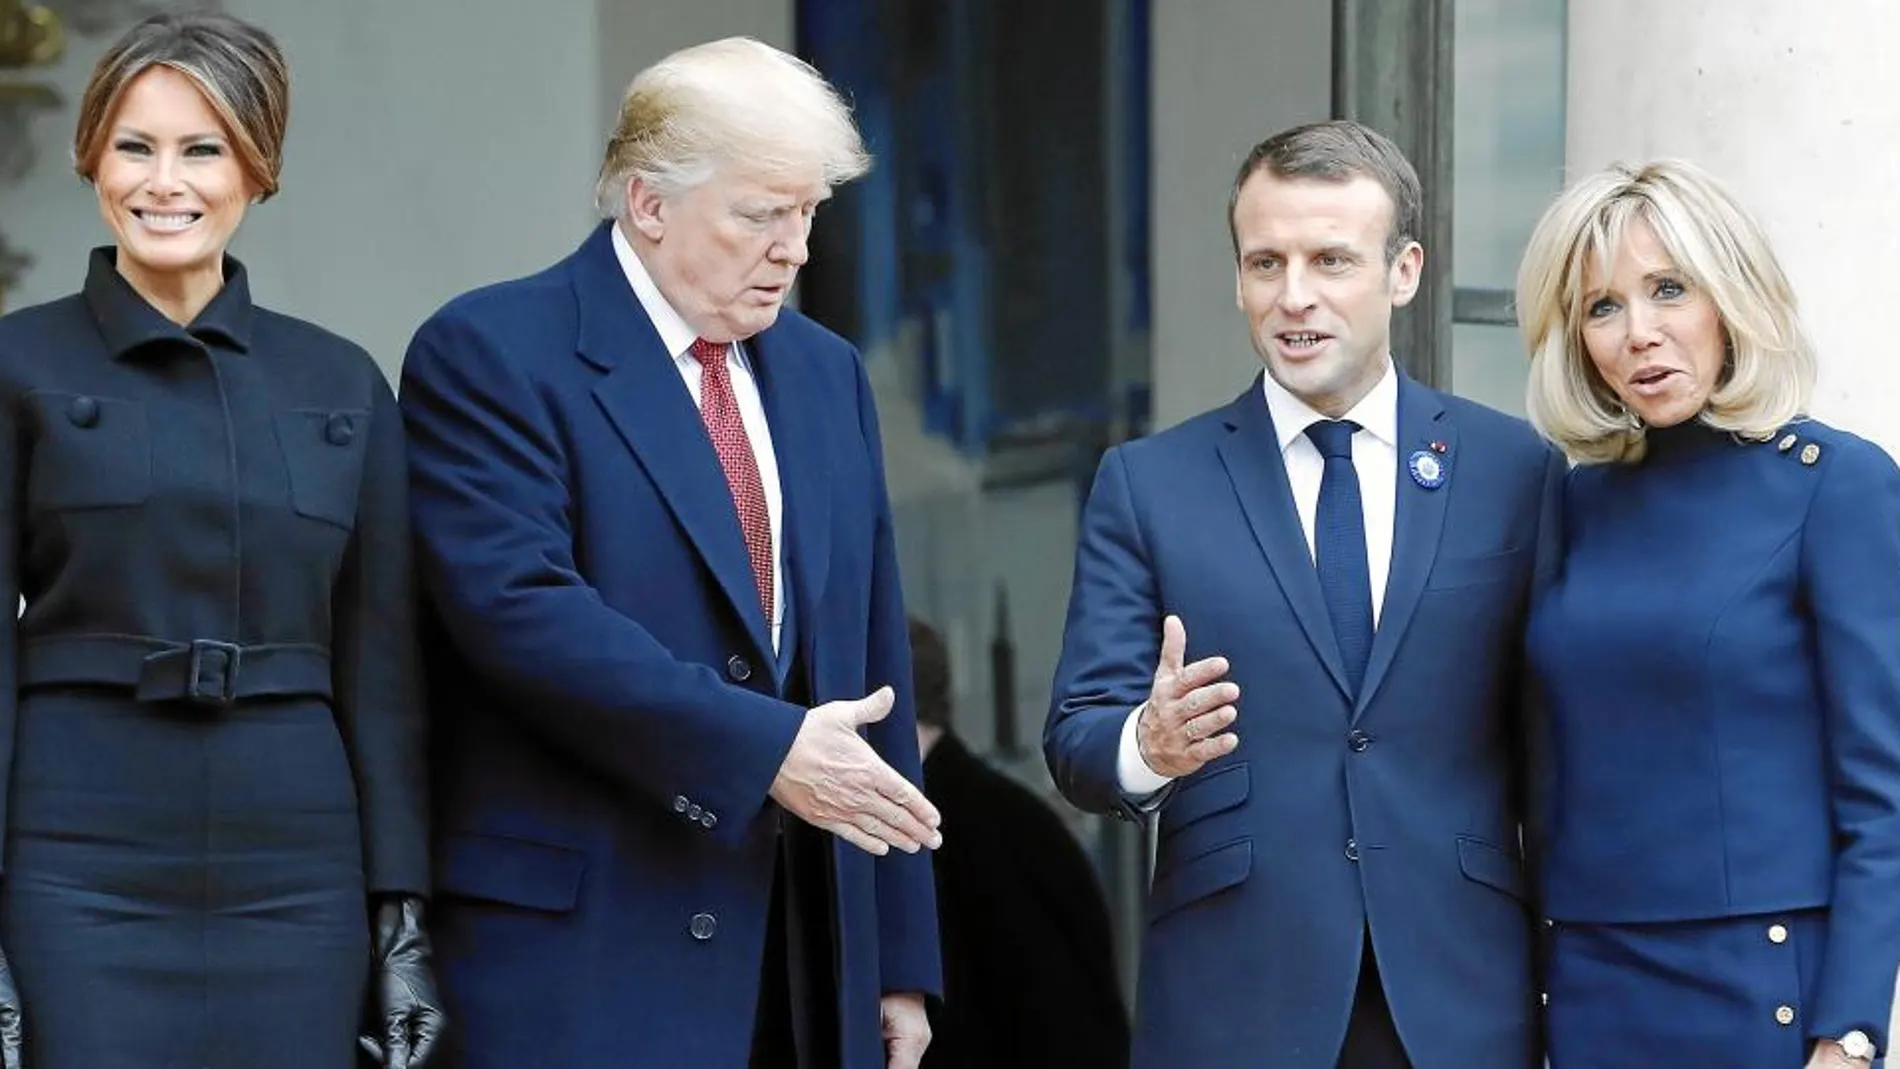 Melania y Donald Trump posan junto al presidente francés, Emmanuel Macron, y su esposa Brigitte frente a las escaleras de acceso al palacio del Elíseo